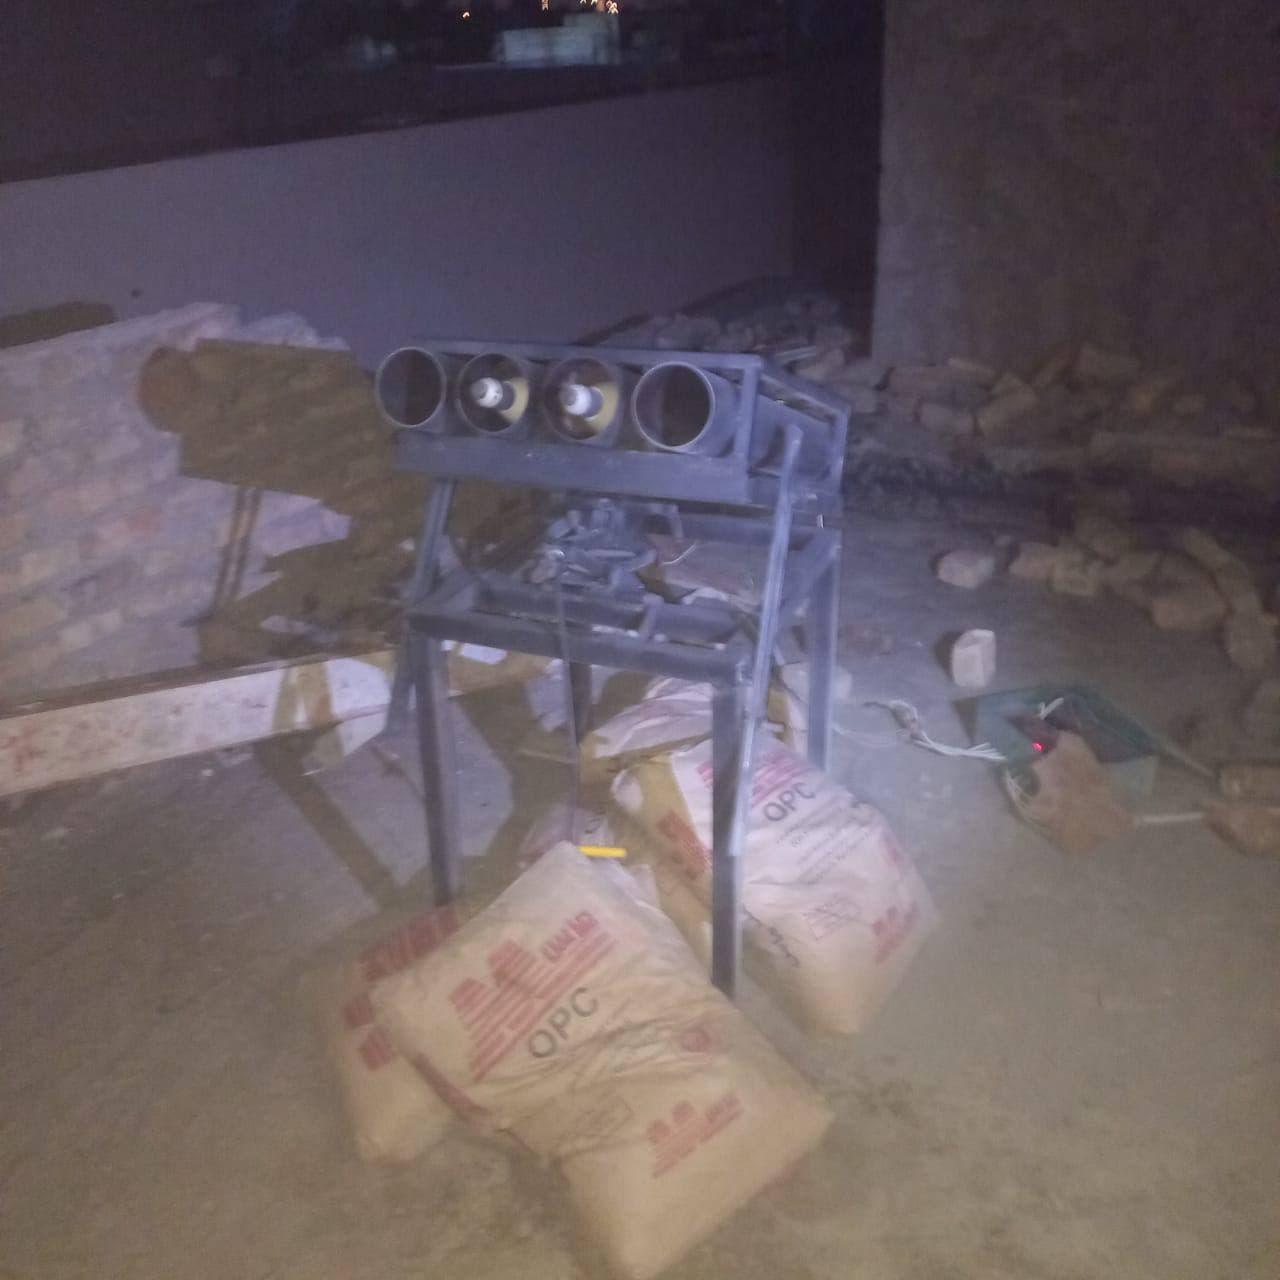 منصة صواريخ اطلقت على موقع اميركي قرب مطار بغداد الدولي ليل الخميس